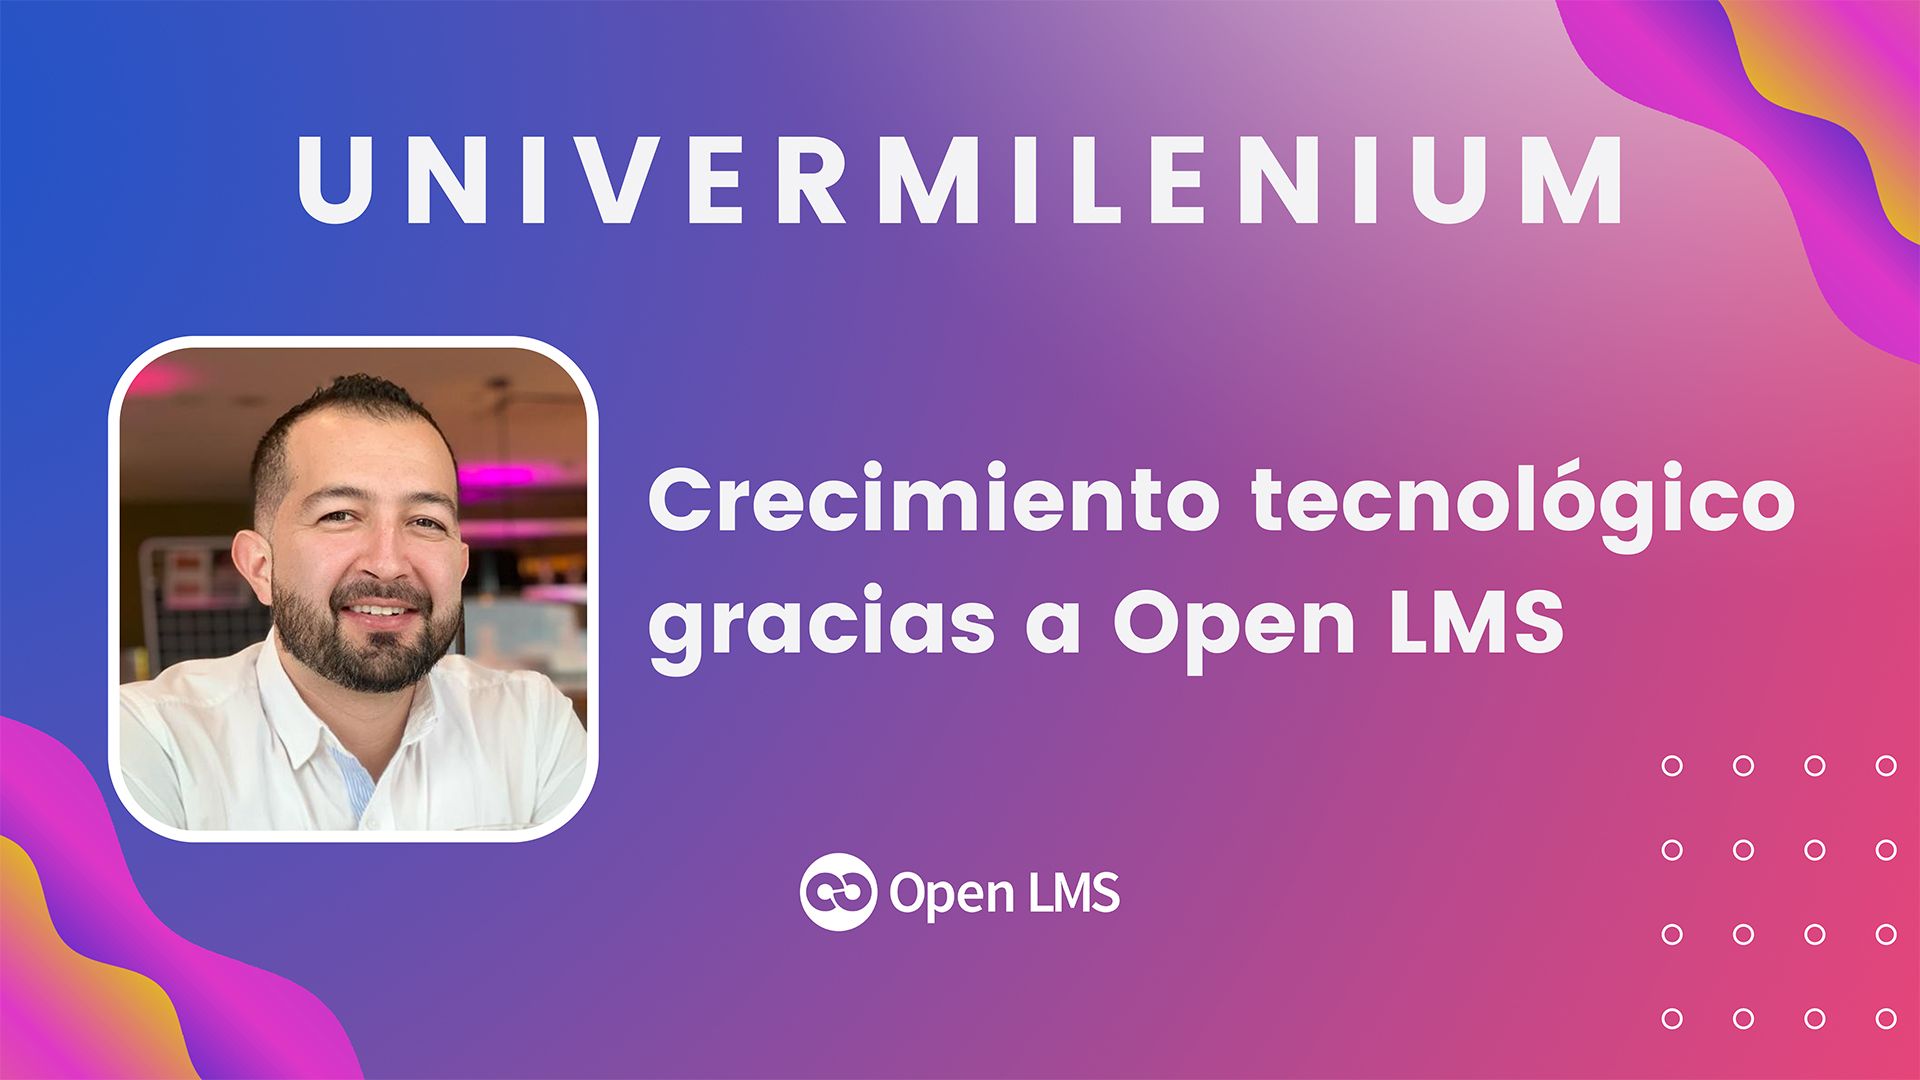 UniverMilenium acelera su crecimiento tecnológico gracias a la automatización de procesos con Open LMS